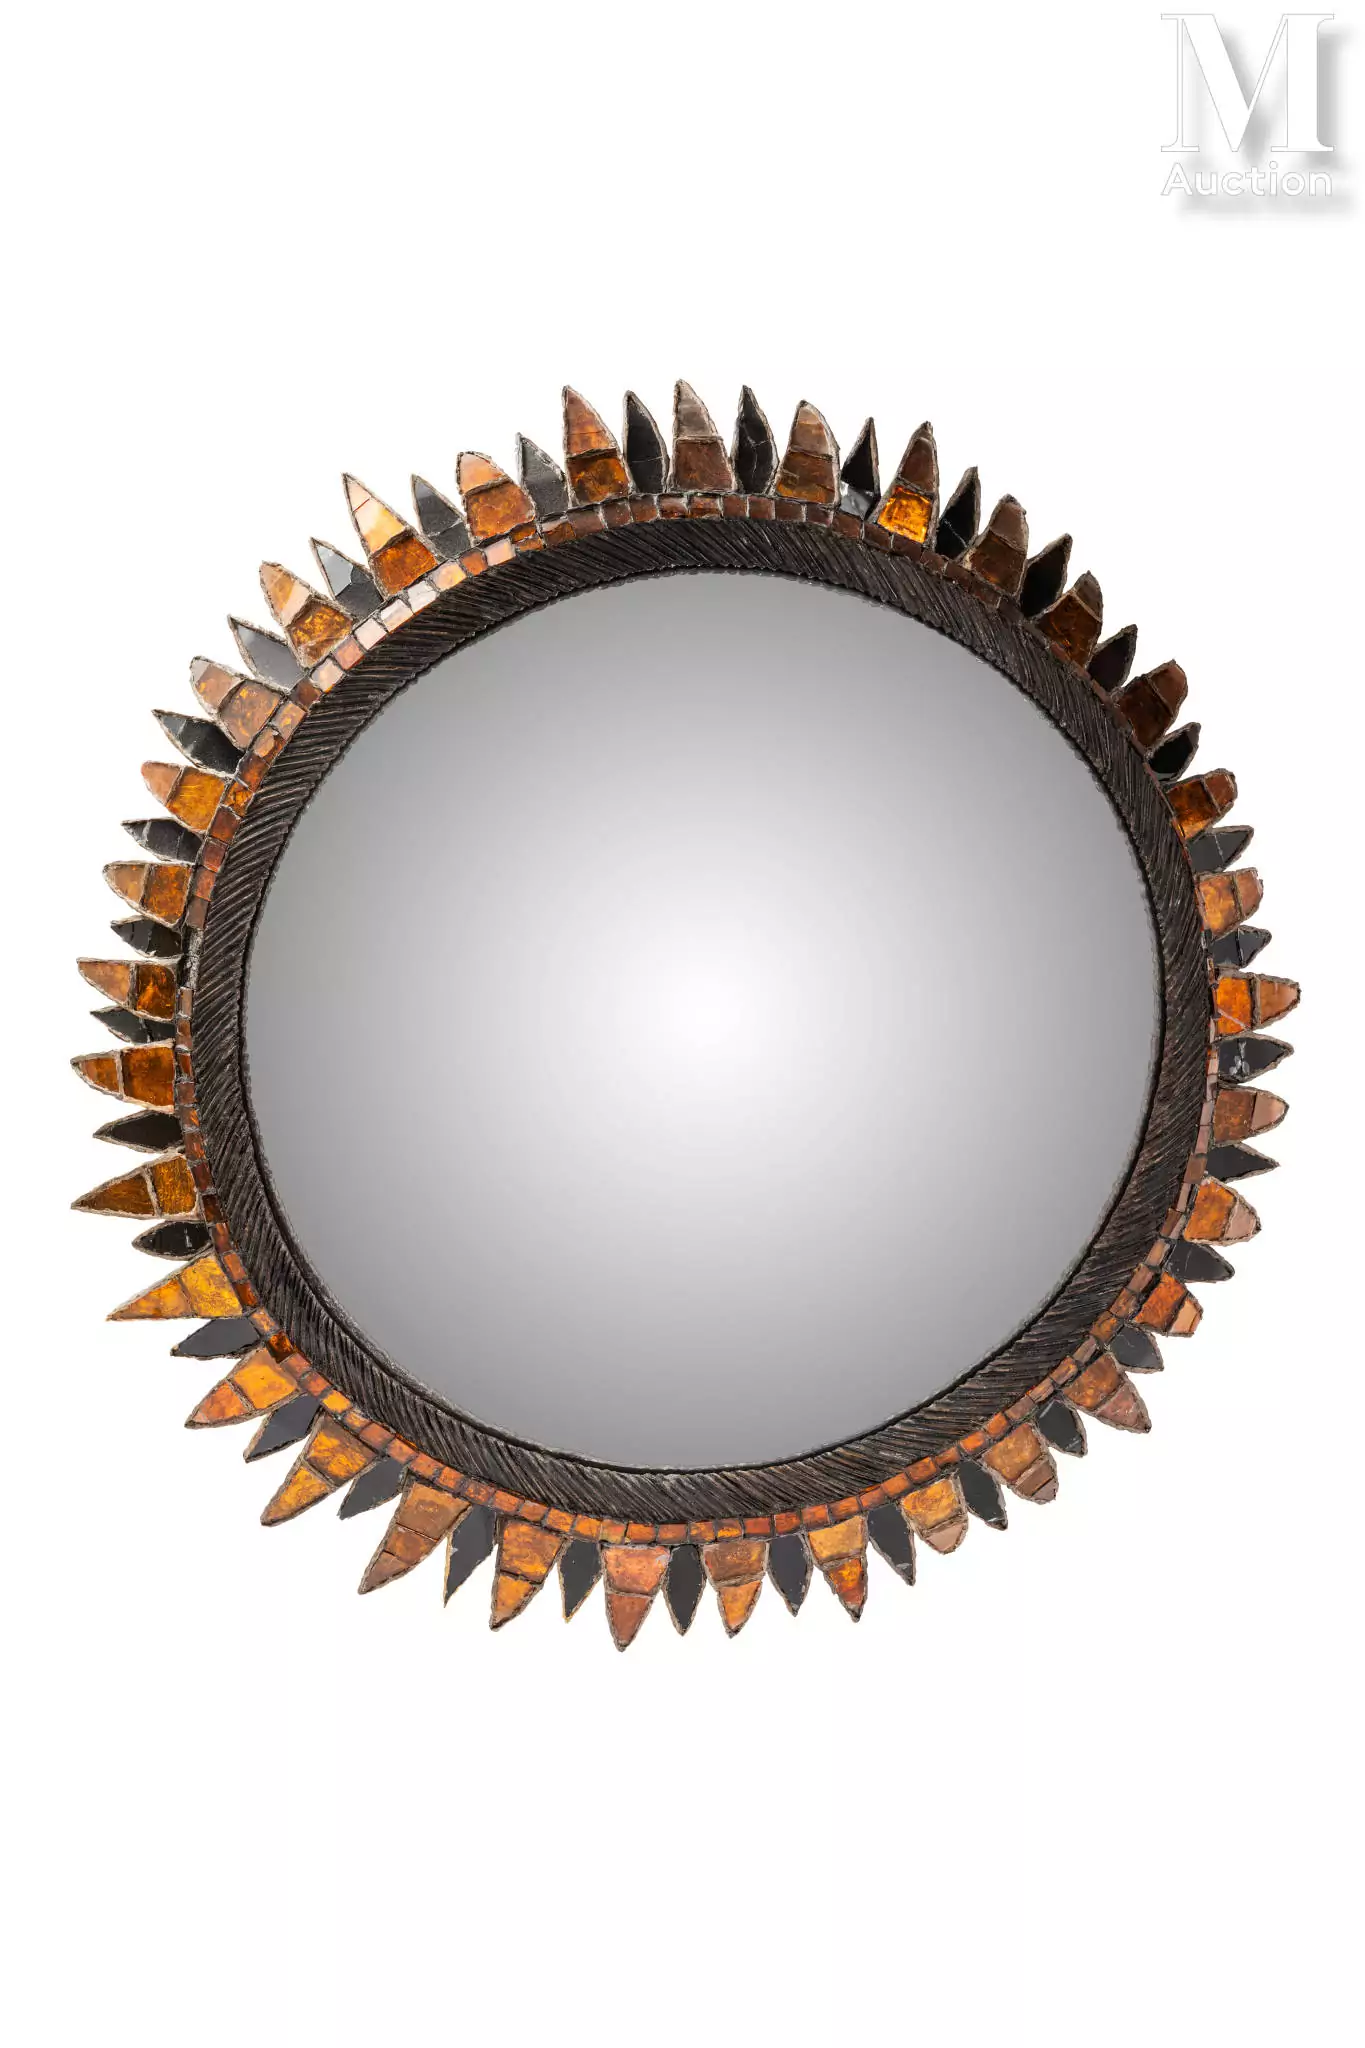 Line VAUTRIN (1913 - 1997)Encadrement en talosel composé de verre miroir teinté bleu et orange. L'arrière du miroir garni d'un rond de cuir. Signé "Line Vautrin" au dos. D : 58 cm 